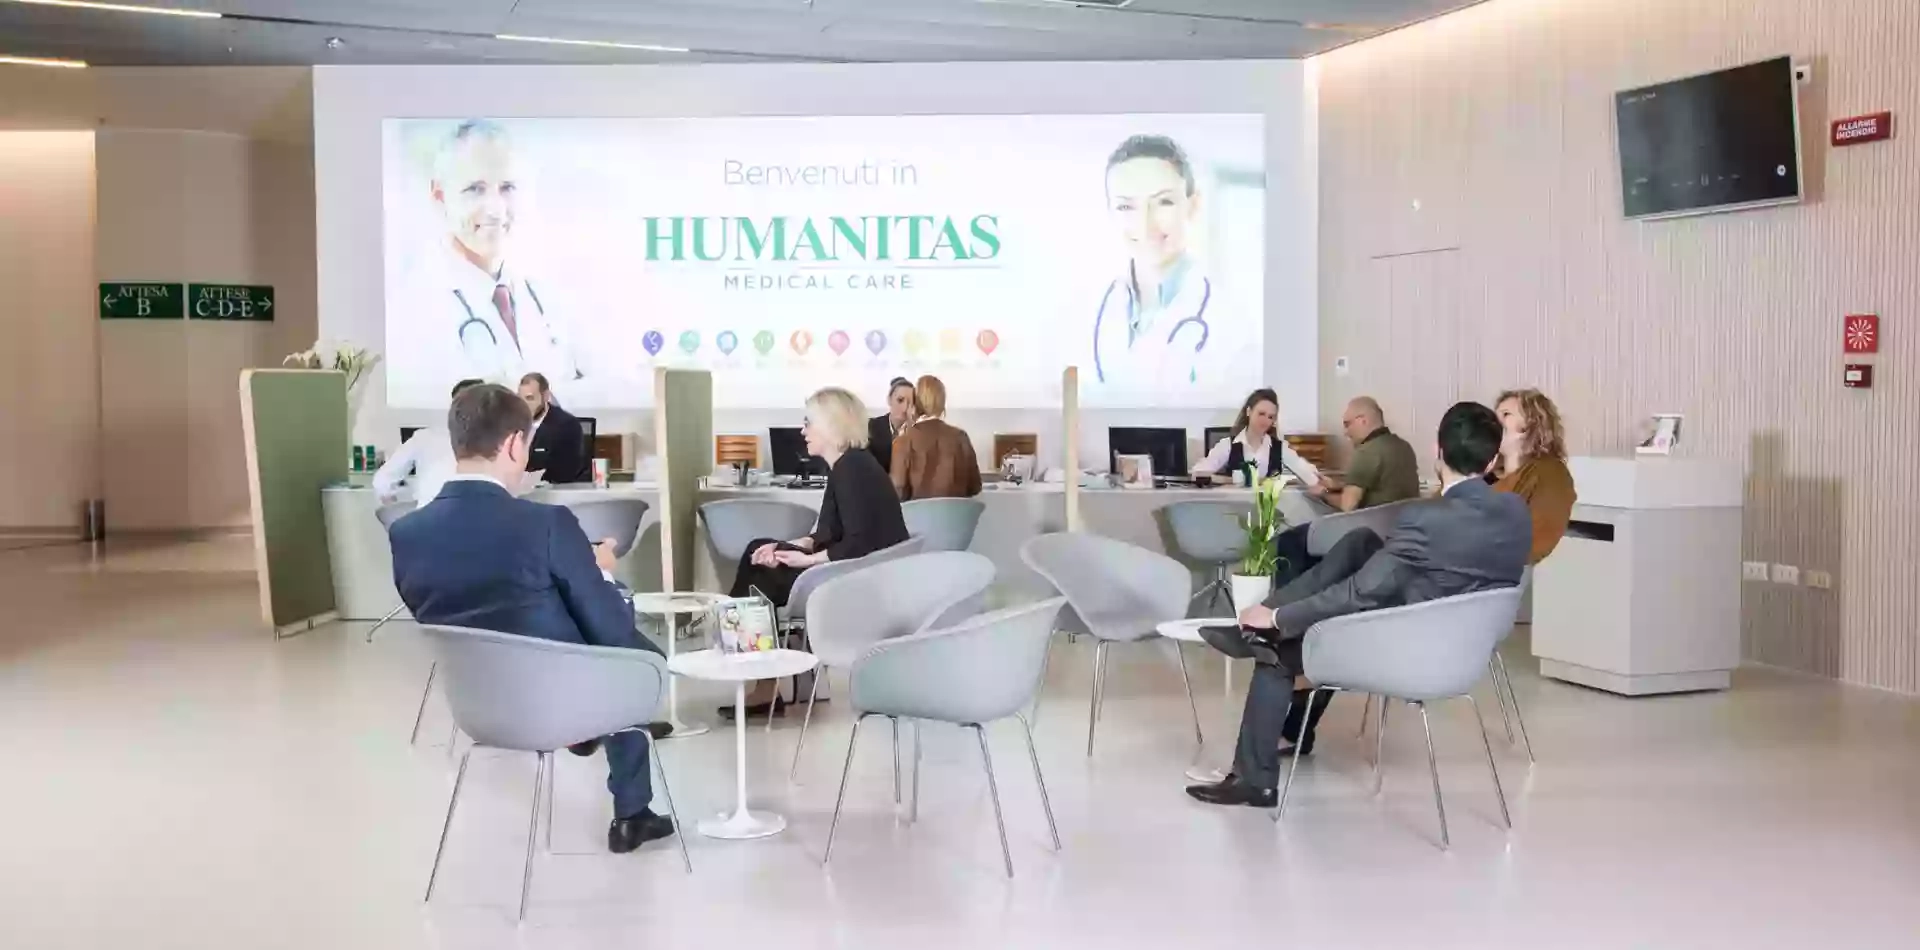 Humanitas Medical Care Arese